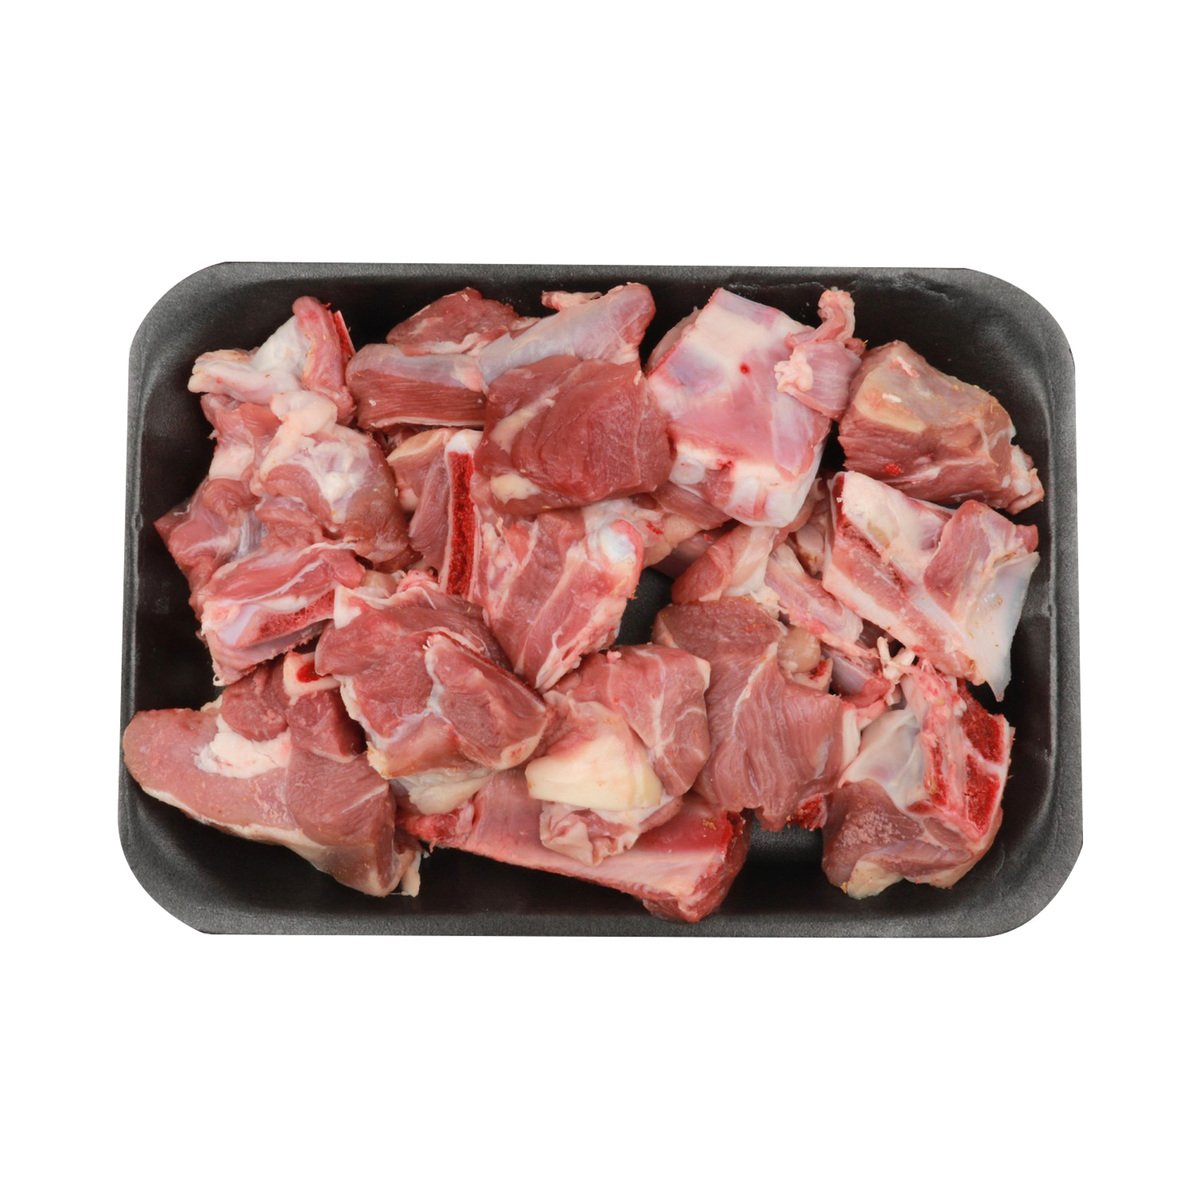 Pakistani Mutton Cuts Bone In 500 g